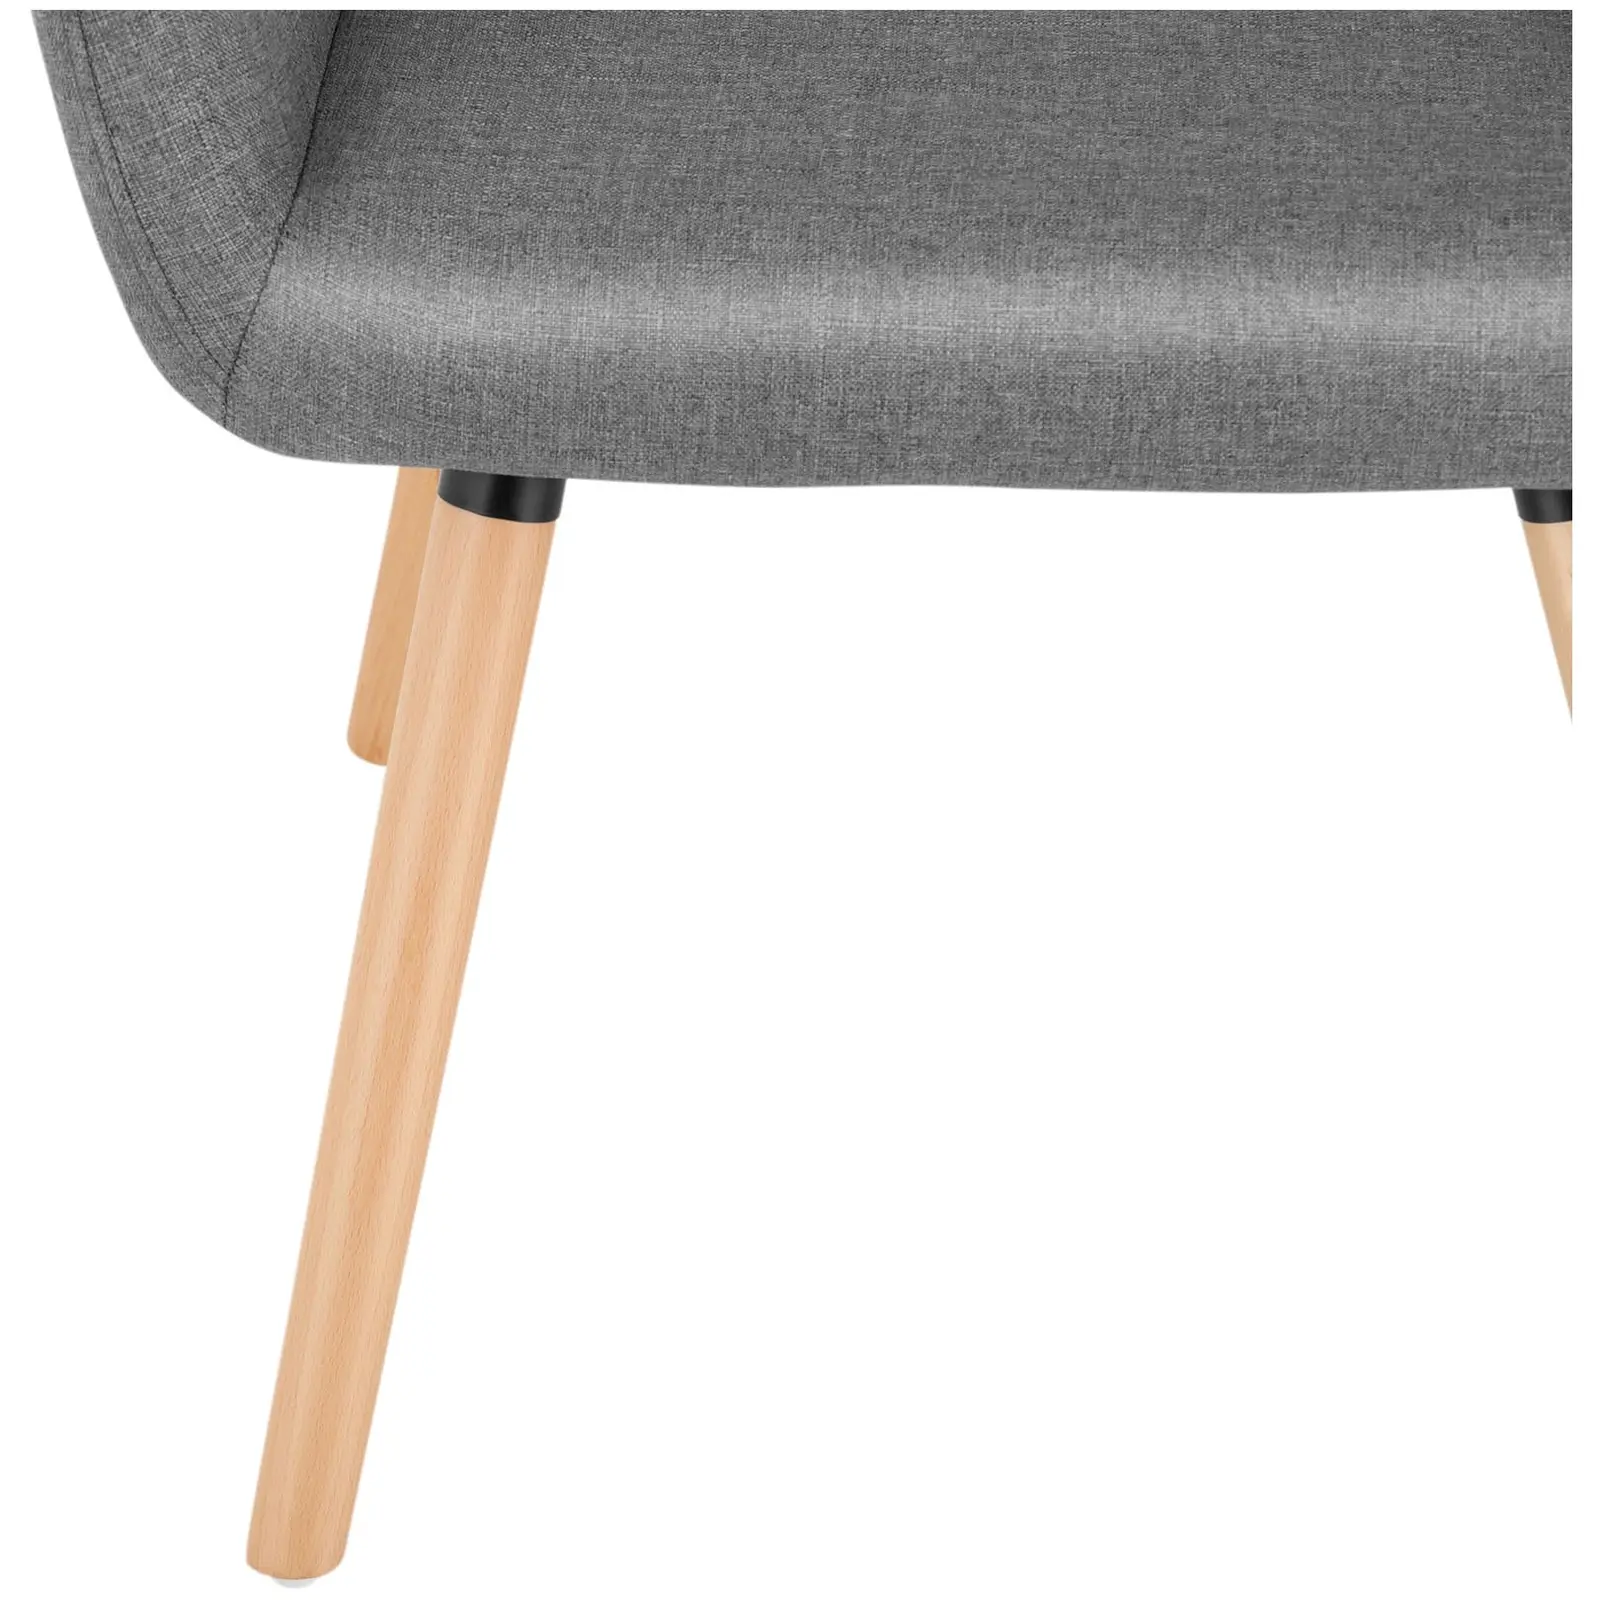 Chaise en tissu - 160 kg max. - Surface d'assise de 42 x 47 cm - Coloris gris